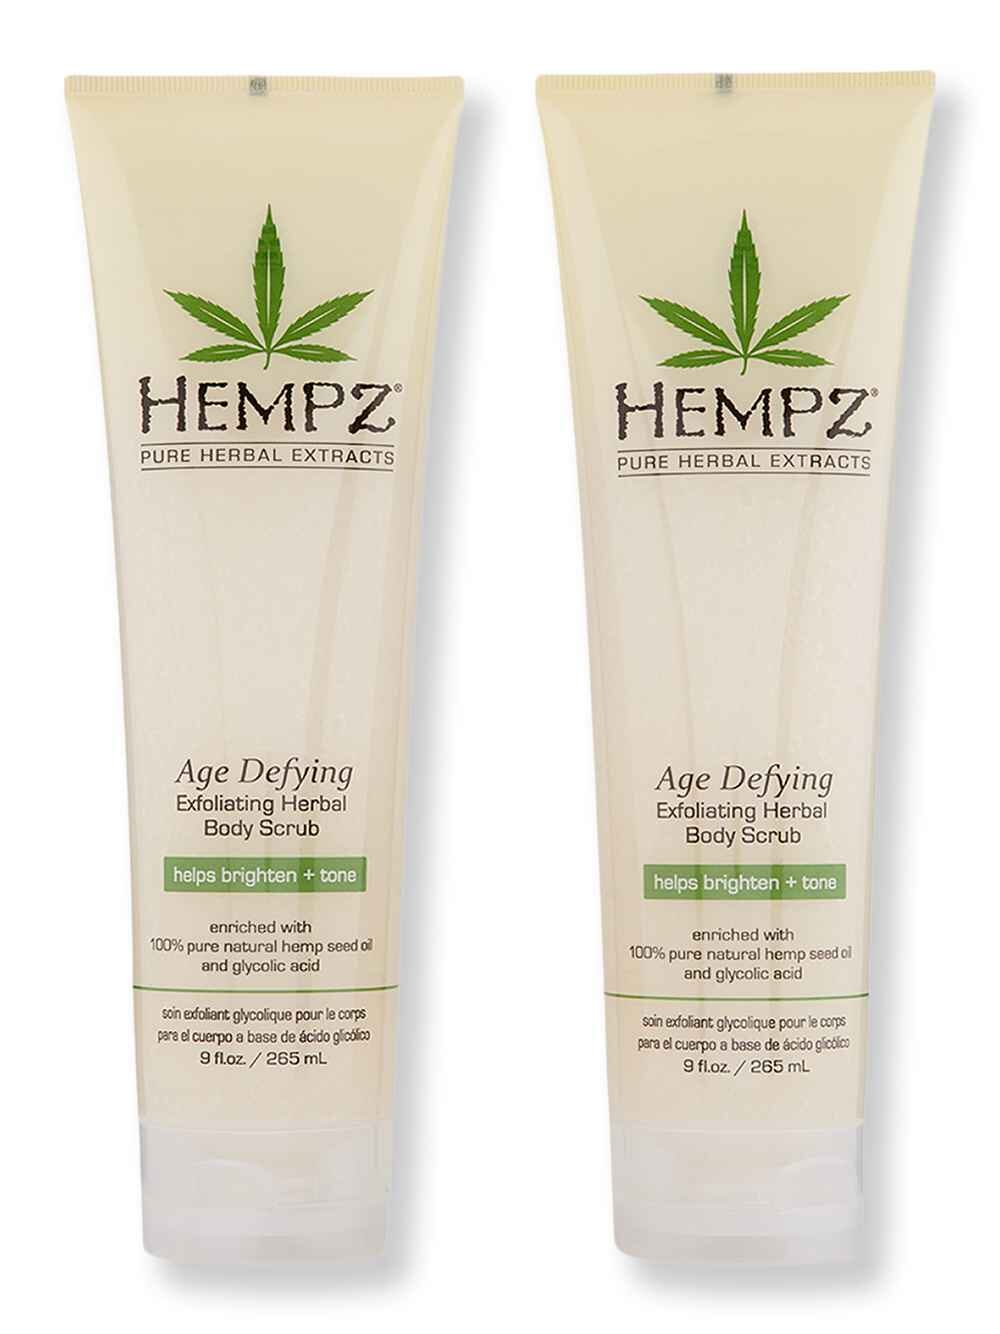 Hempz Hempz Age Defying Herbal Body Scrub 2 Ct 9 oz Body Scrubs & Exfoliants 